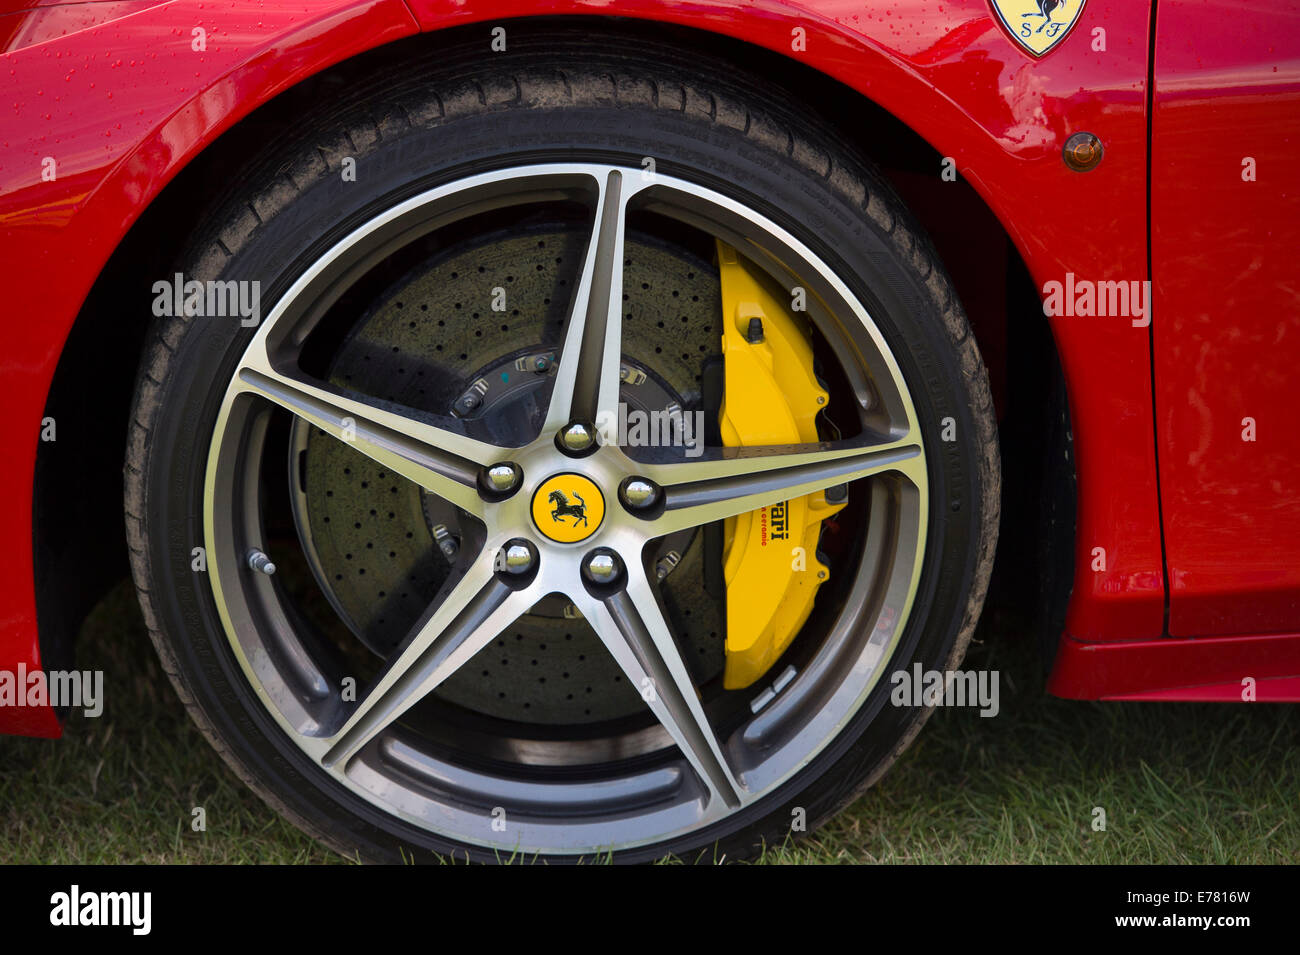 Ferrari Felgen auf einem roten Ferrari-Auto Stockfotografie - Alamy